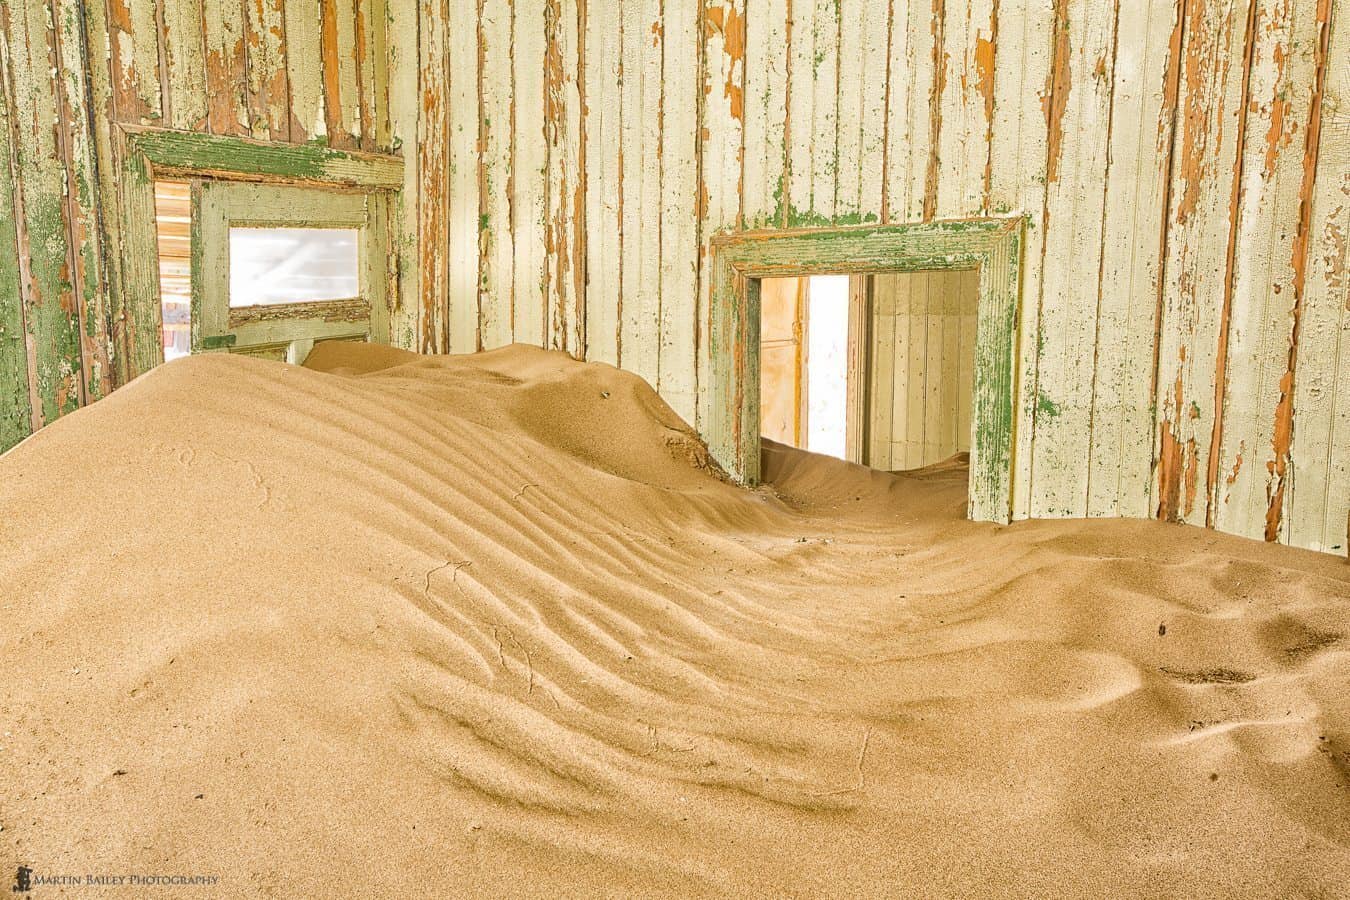 Sand Filled Room